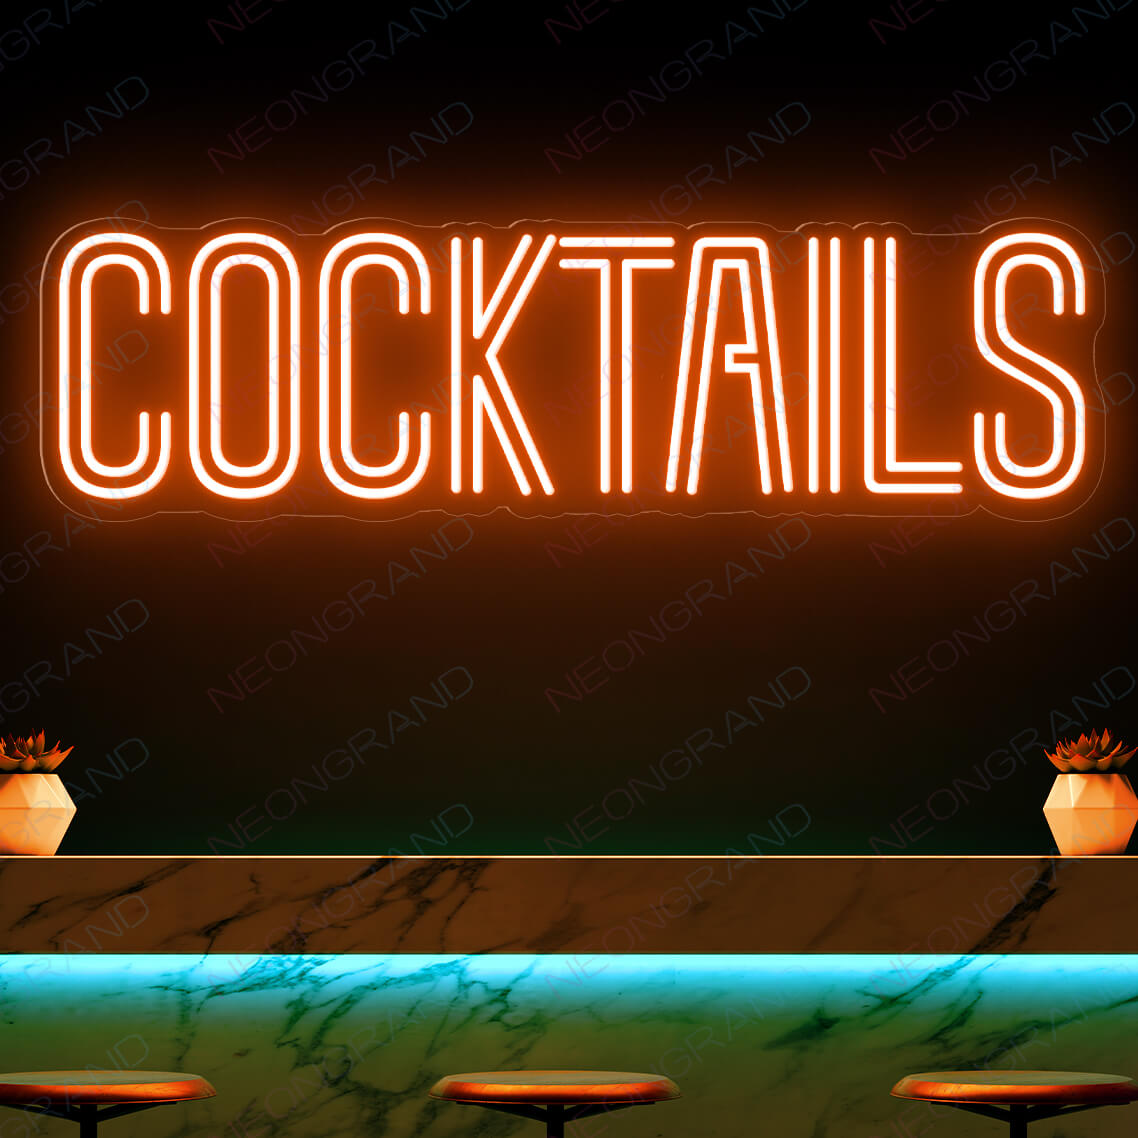 Cocktails Neon Sign Bar Led Light orange